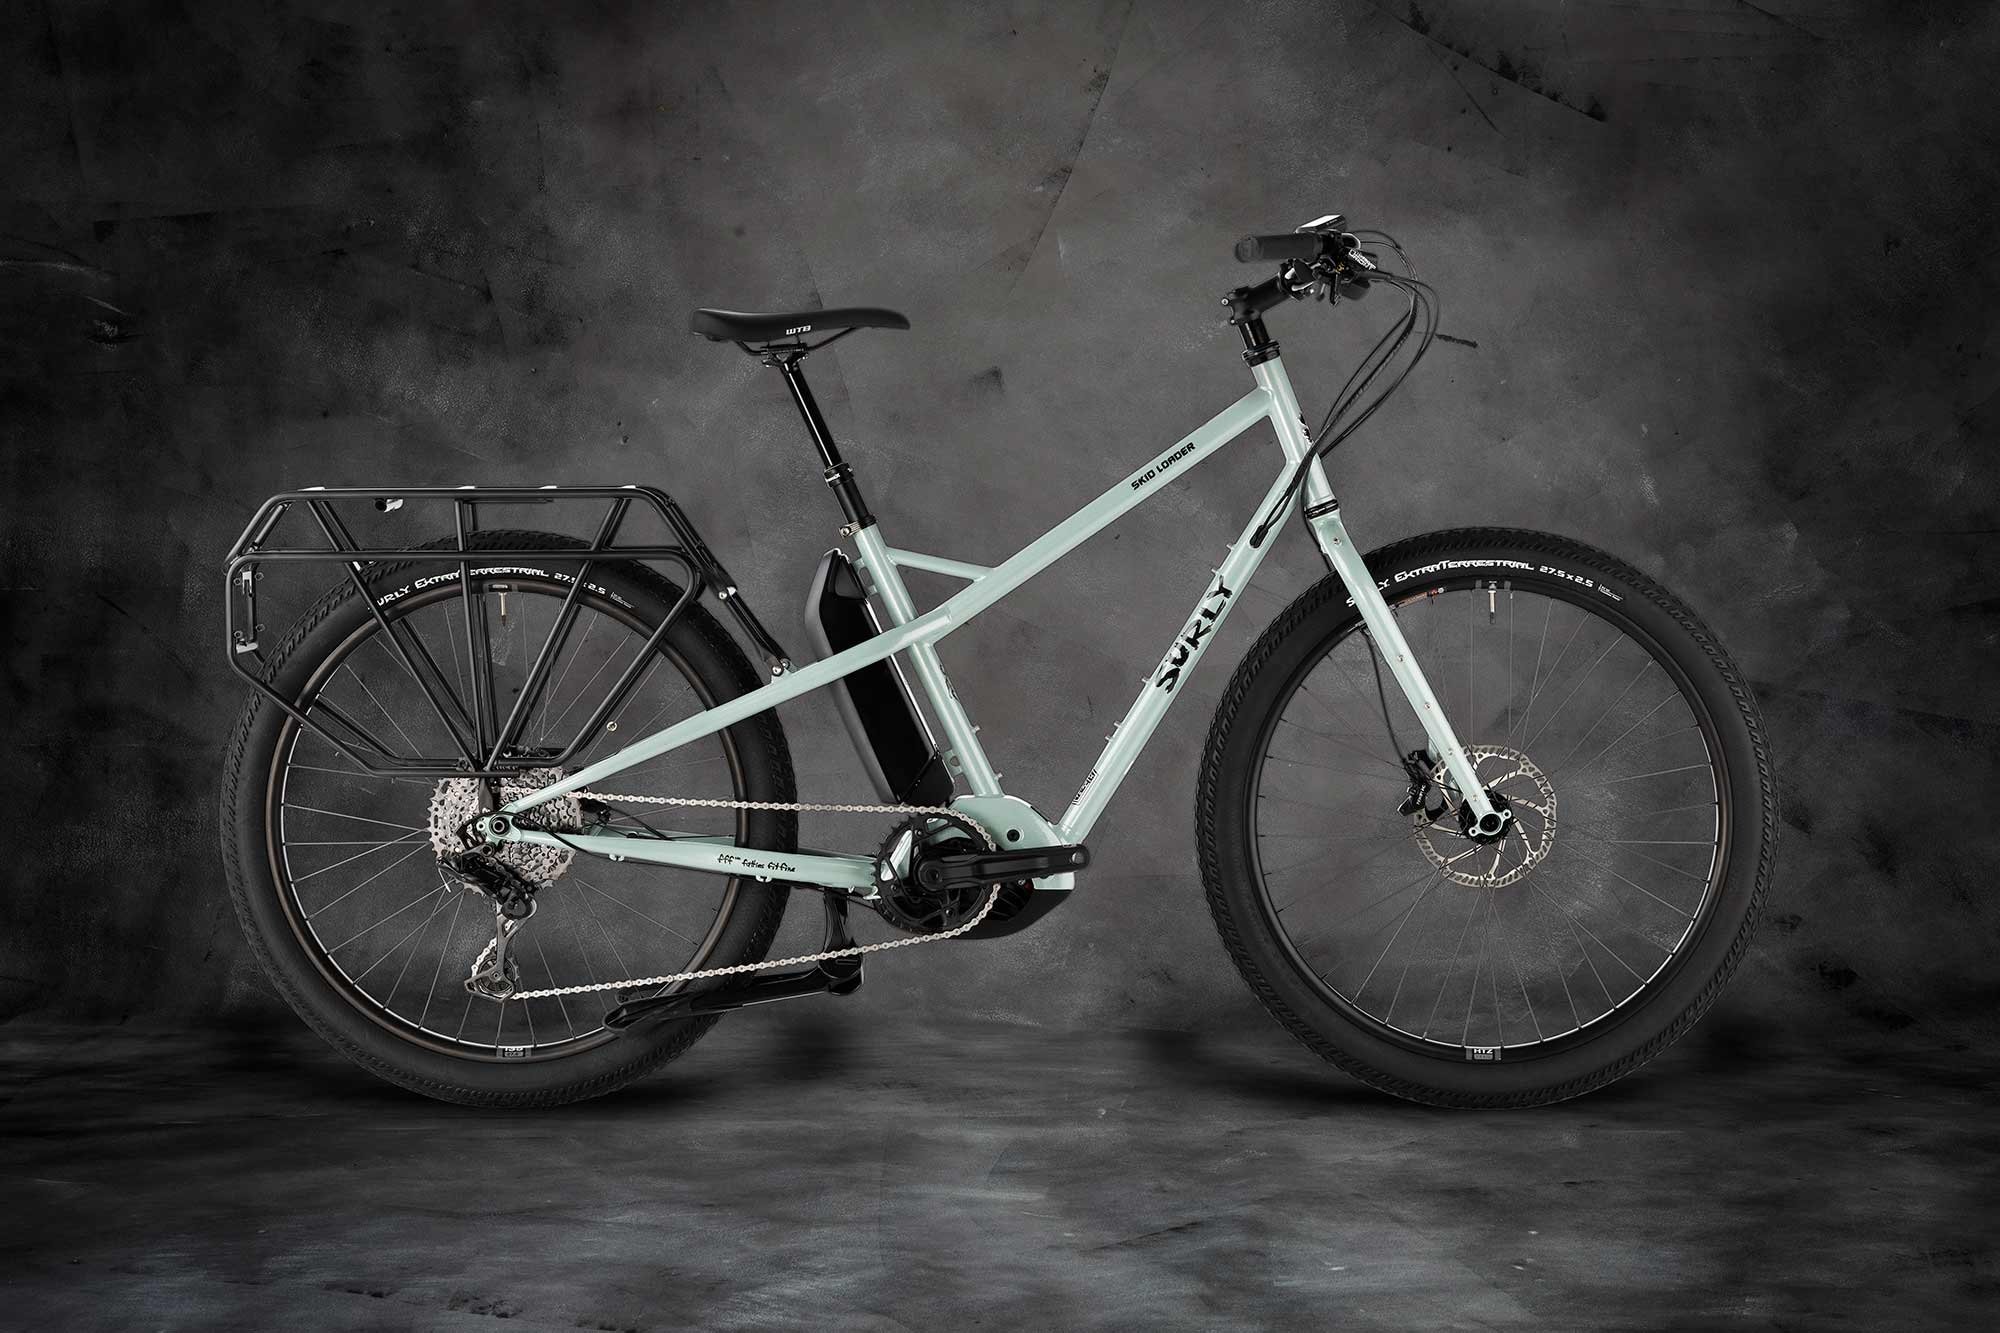 surly-skid-loader-bike-BK2940-gray-background-2000x1333.jpg